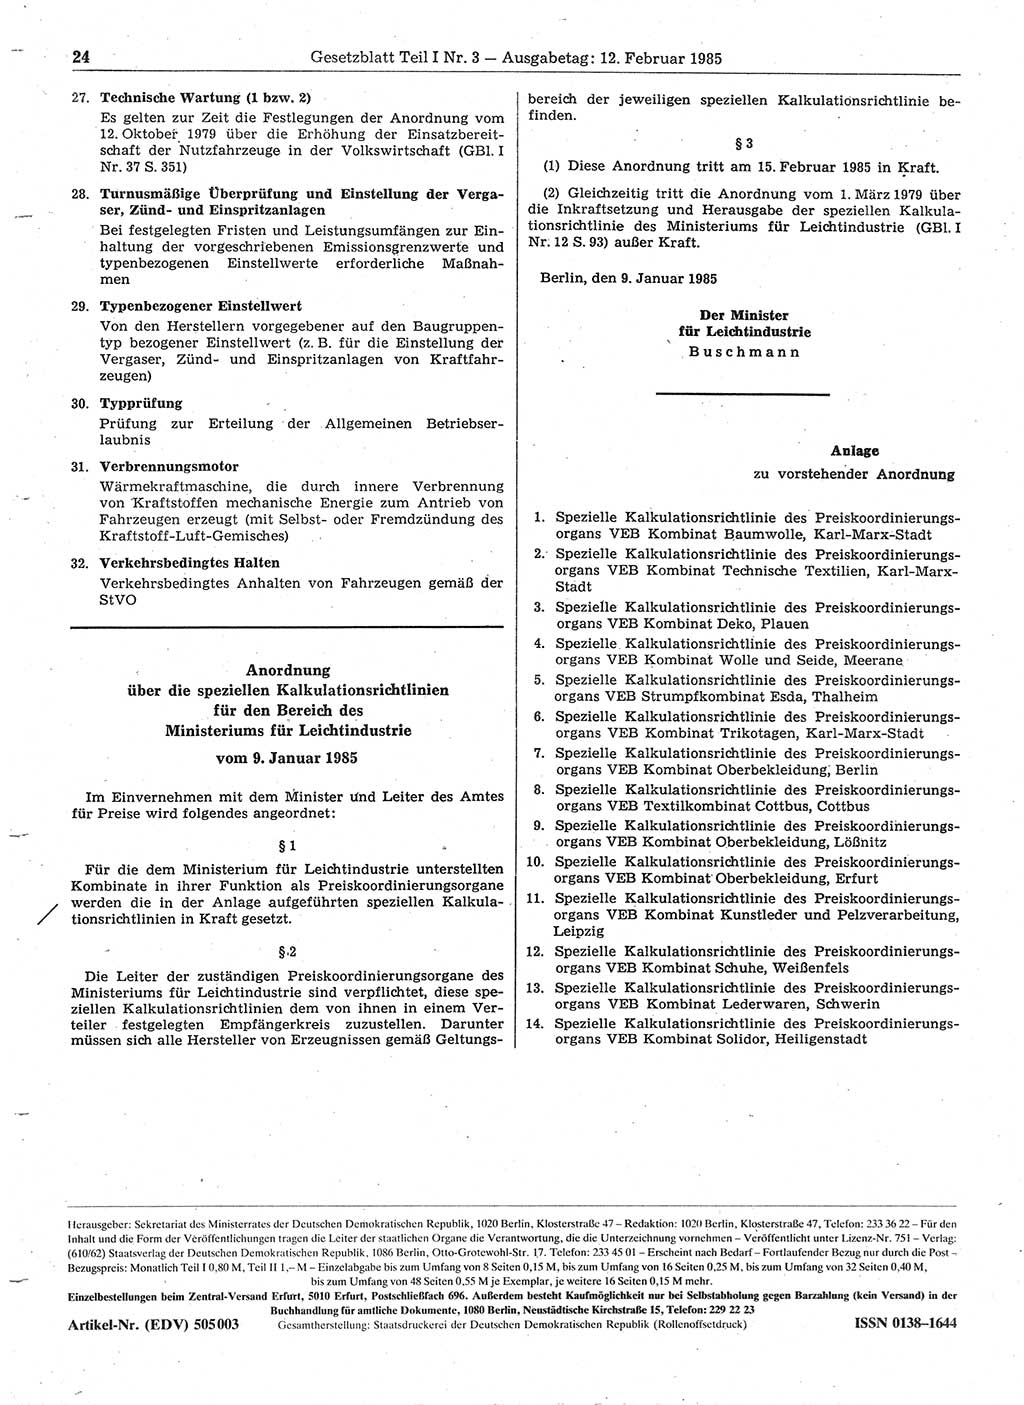 Gesetzblatt (GBl.) der Deutschen Demokratischen Republik (DDR) Teil Ⅰ 1985, Seite 24 (GBl. DDR Ⅰ 1985, S. 24)